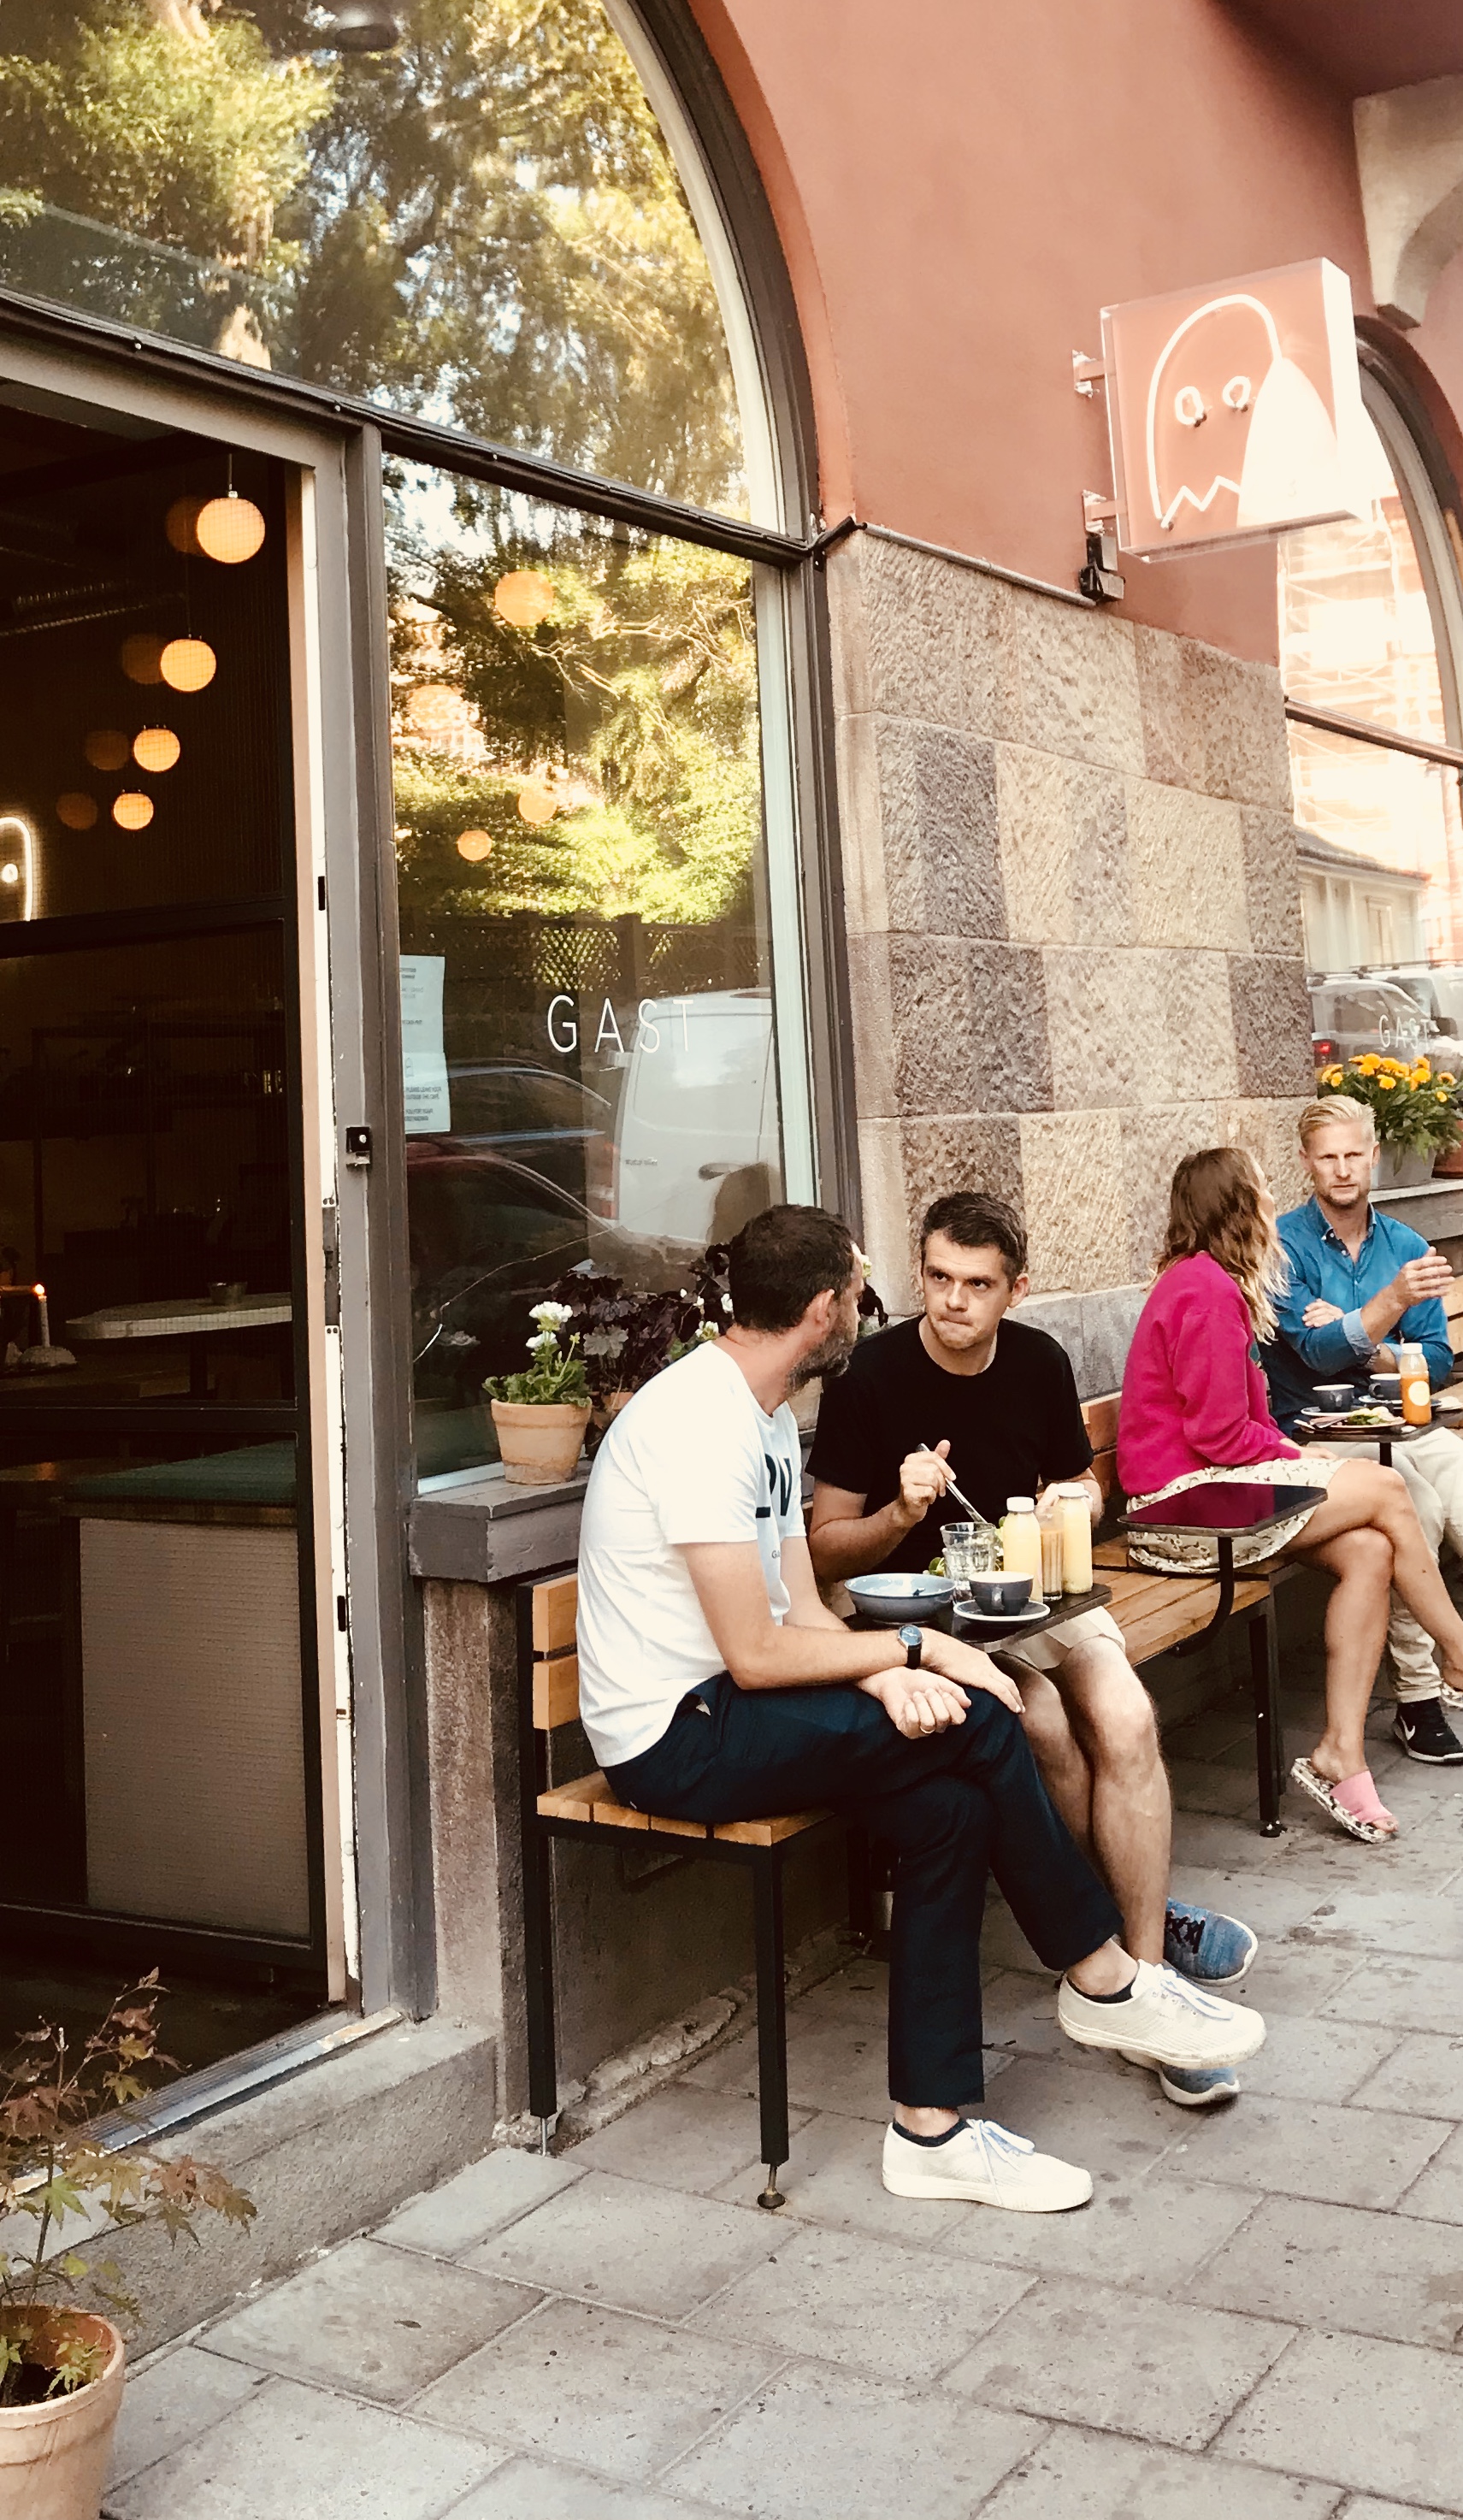 Gast Cafe in Stockholm Sweden